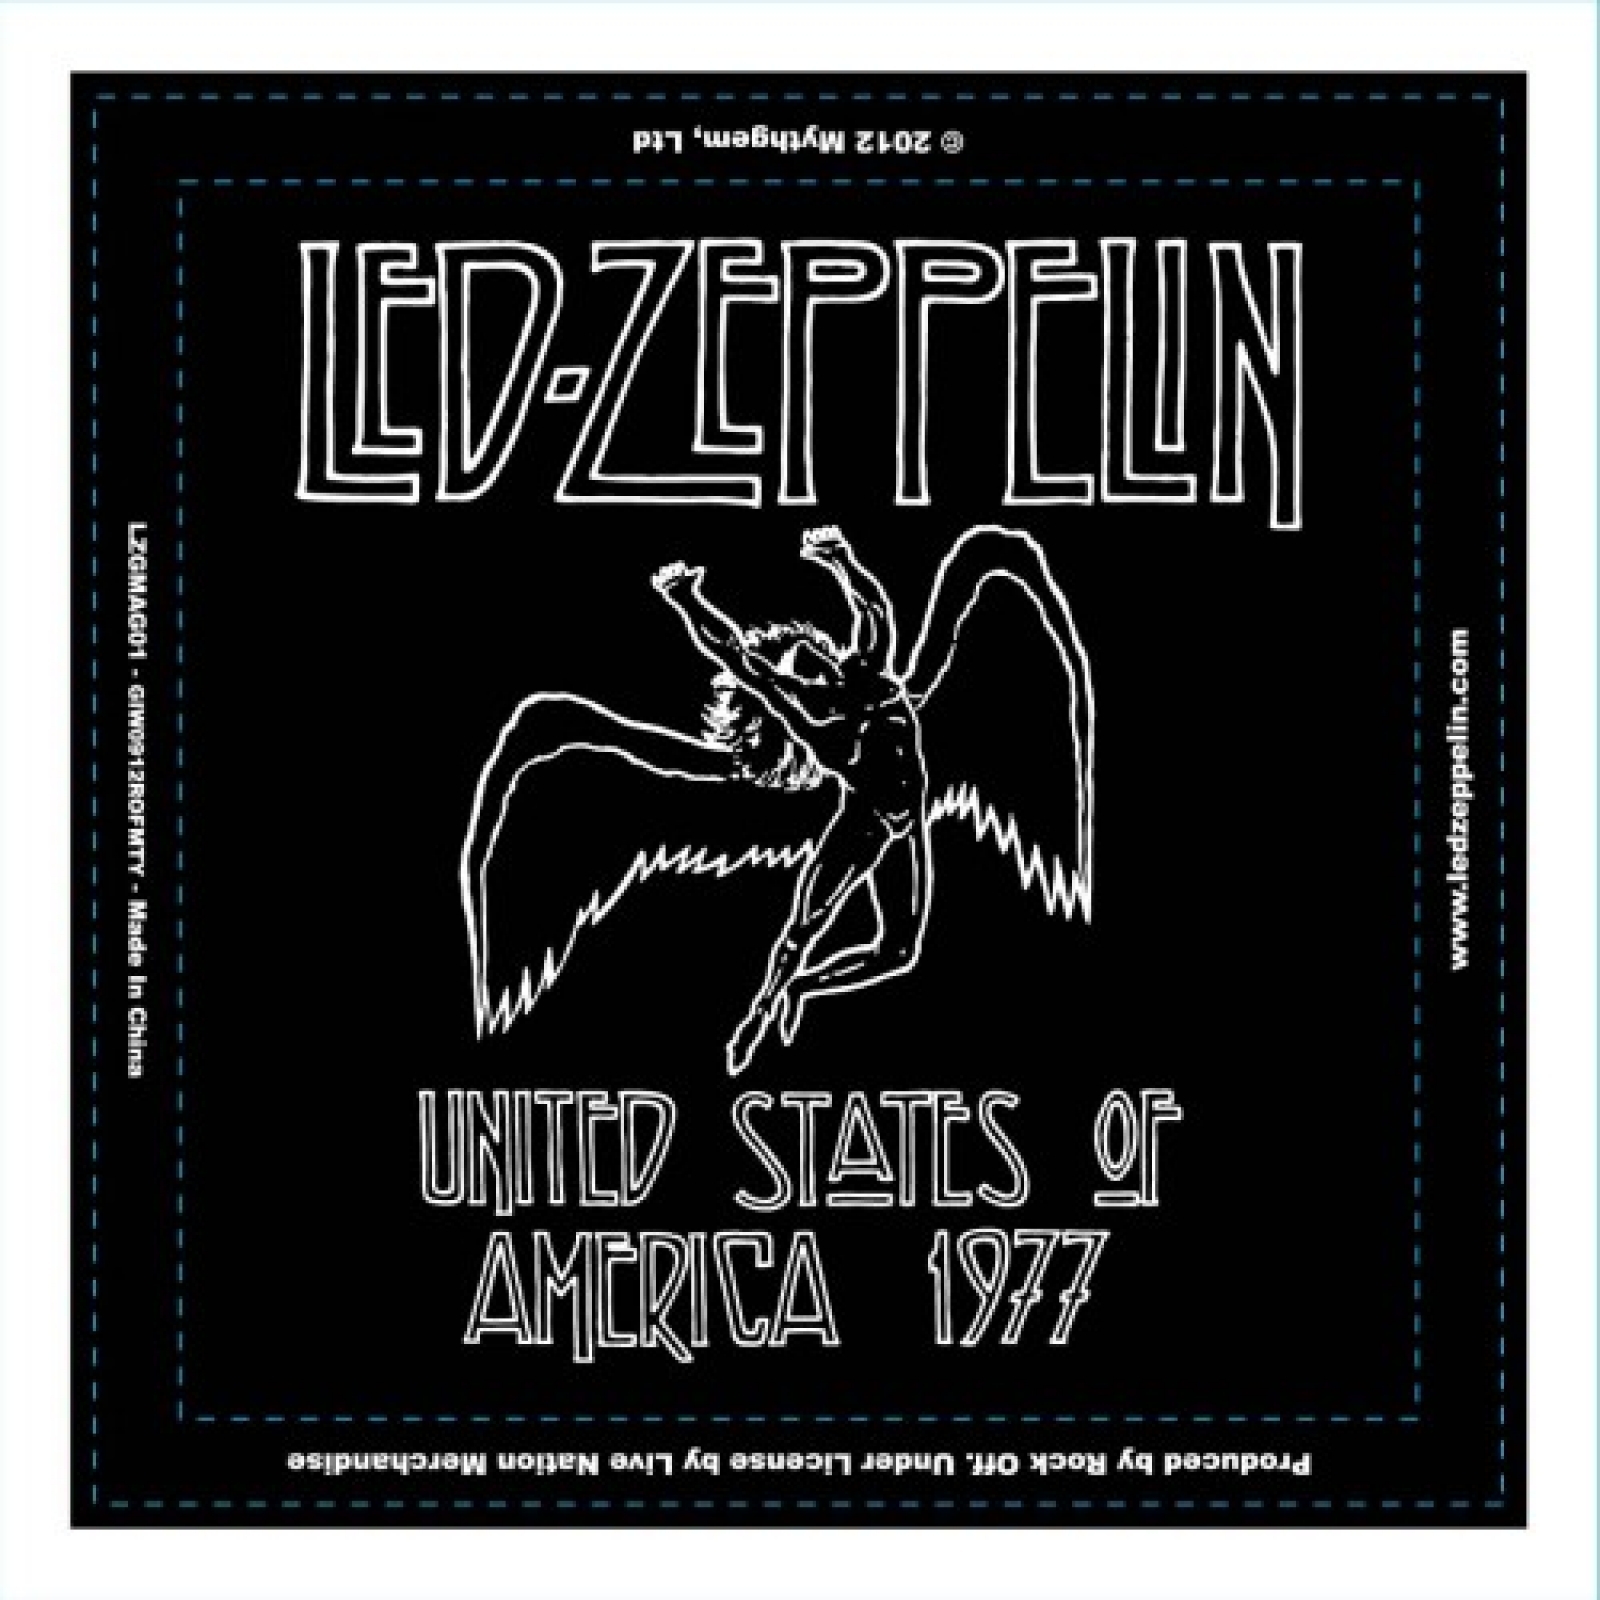 Led Zeppelin USA Tour Fridge Magnet Magnets (LZMAG01)